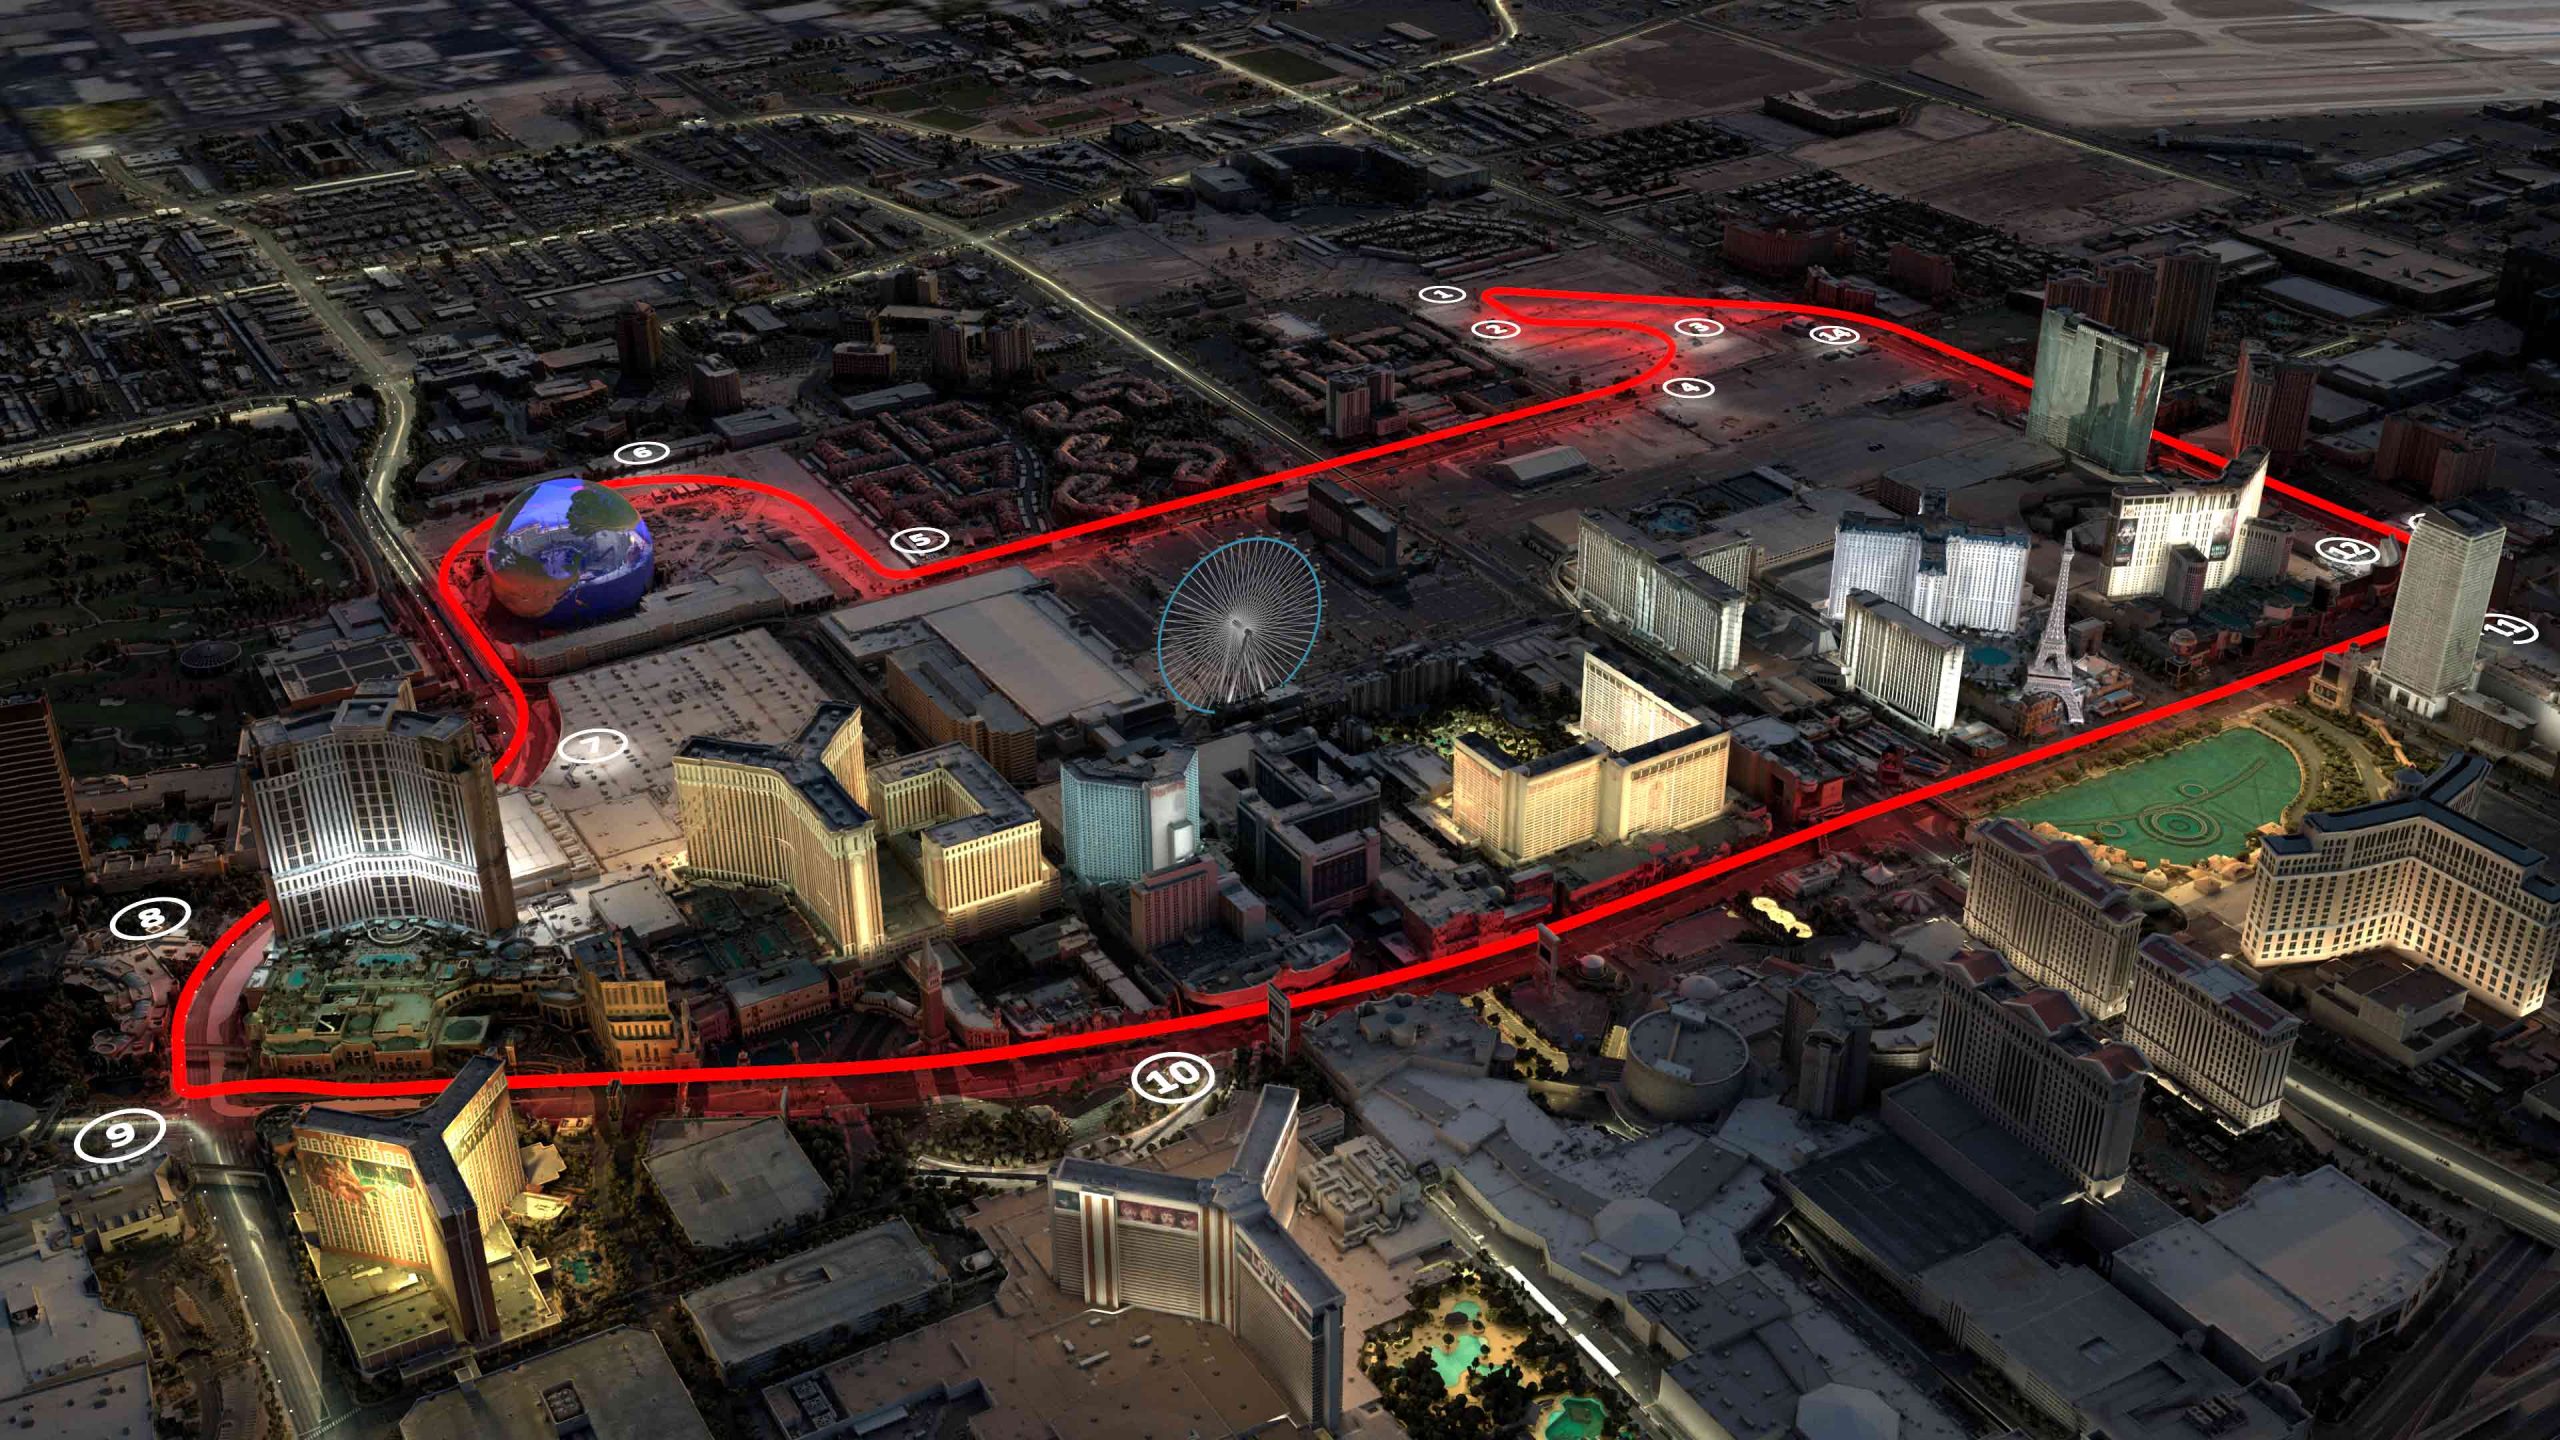 Las Vegas Grand Prix pit lane, Major concerns pit exit